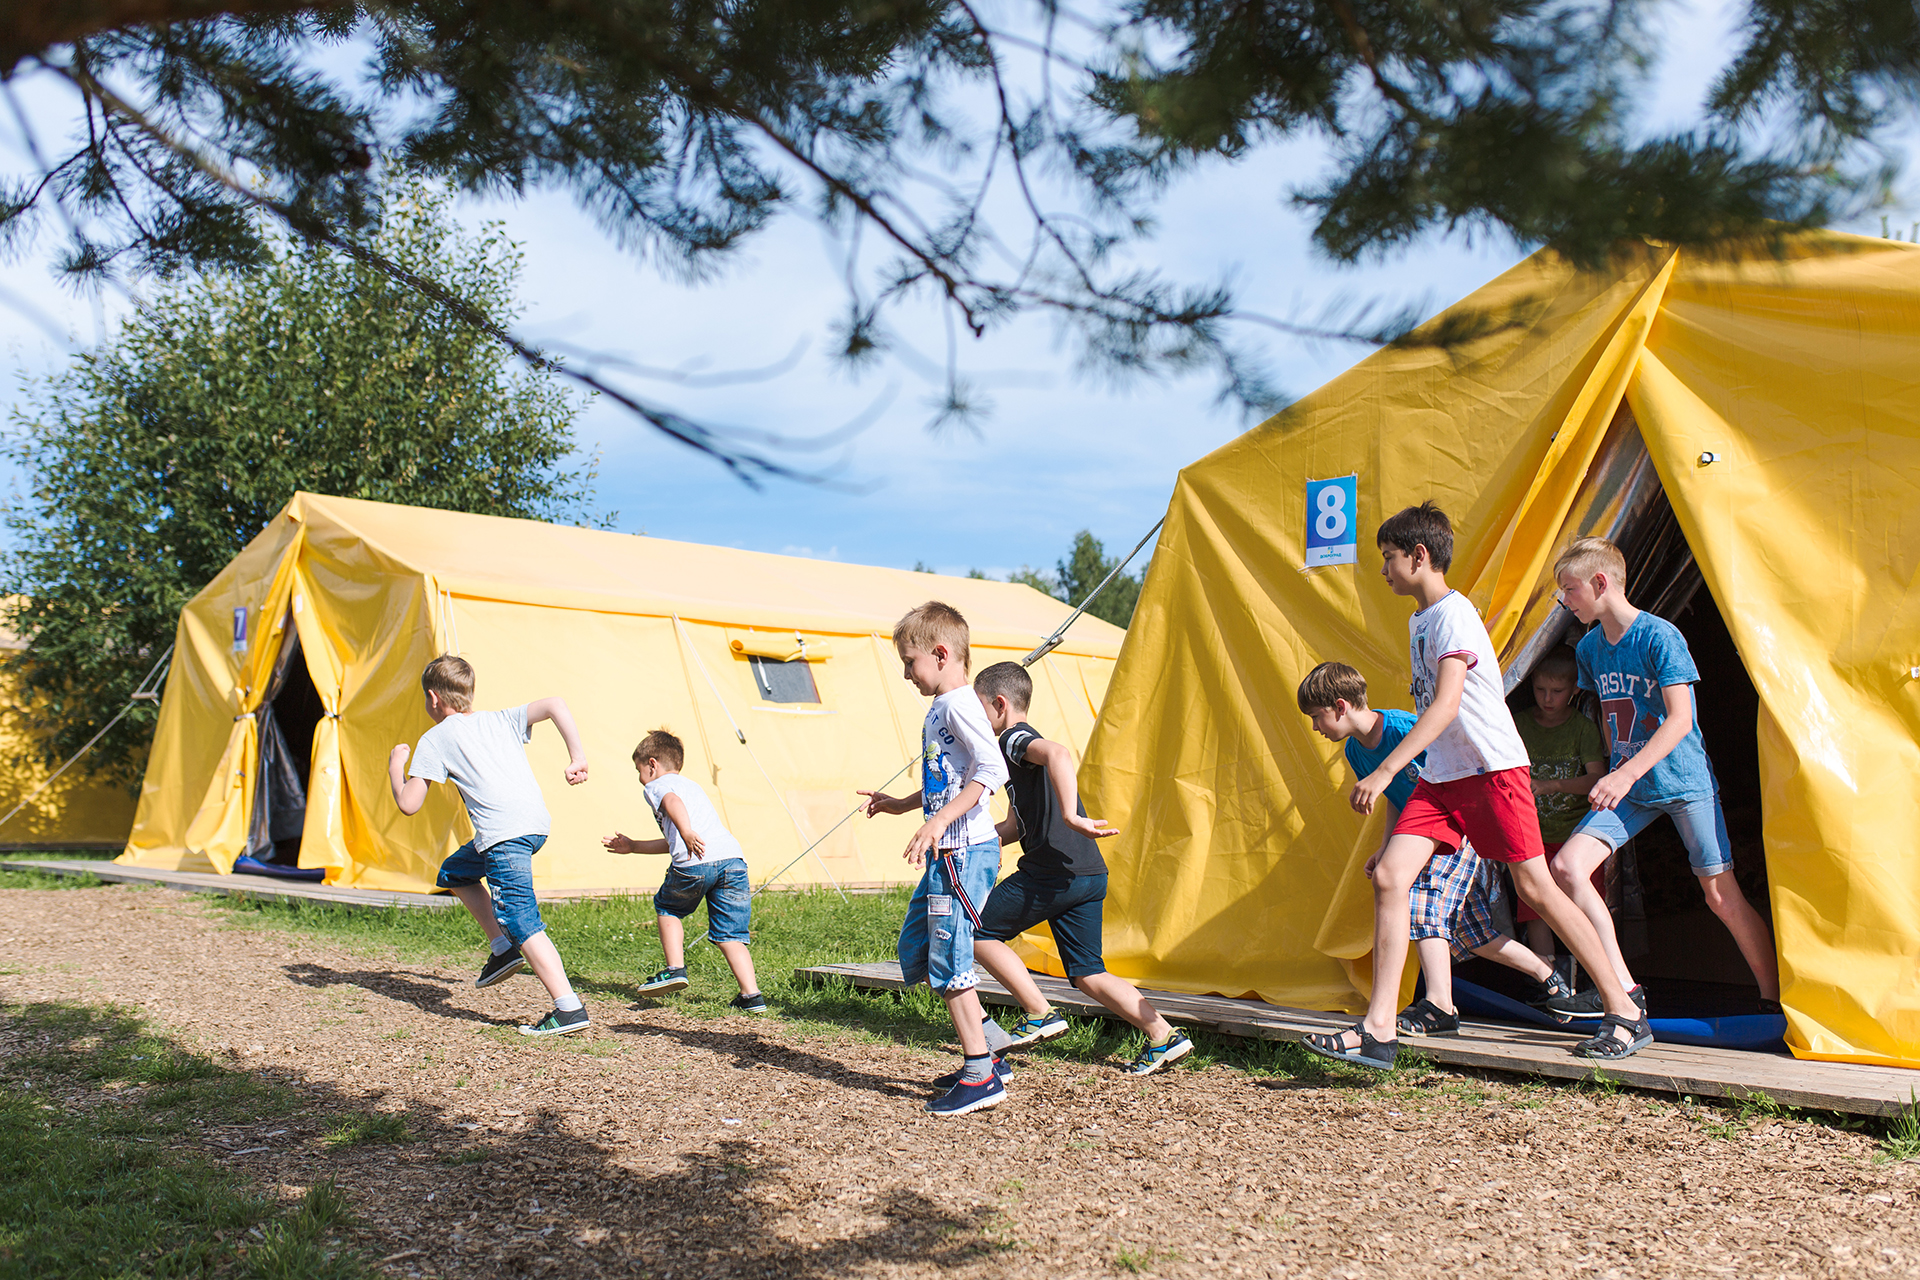 Camp russia. Палаточный лагерь. Палаточный лагерь для детей. Детский лагерь в палатках. Летний палаточный лагерь.